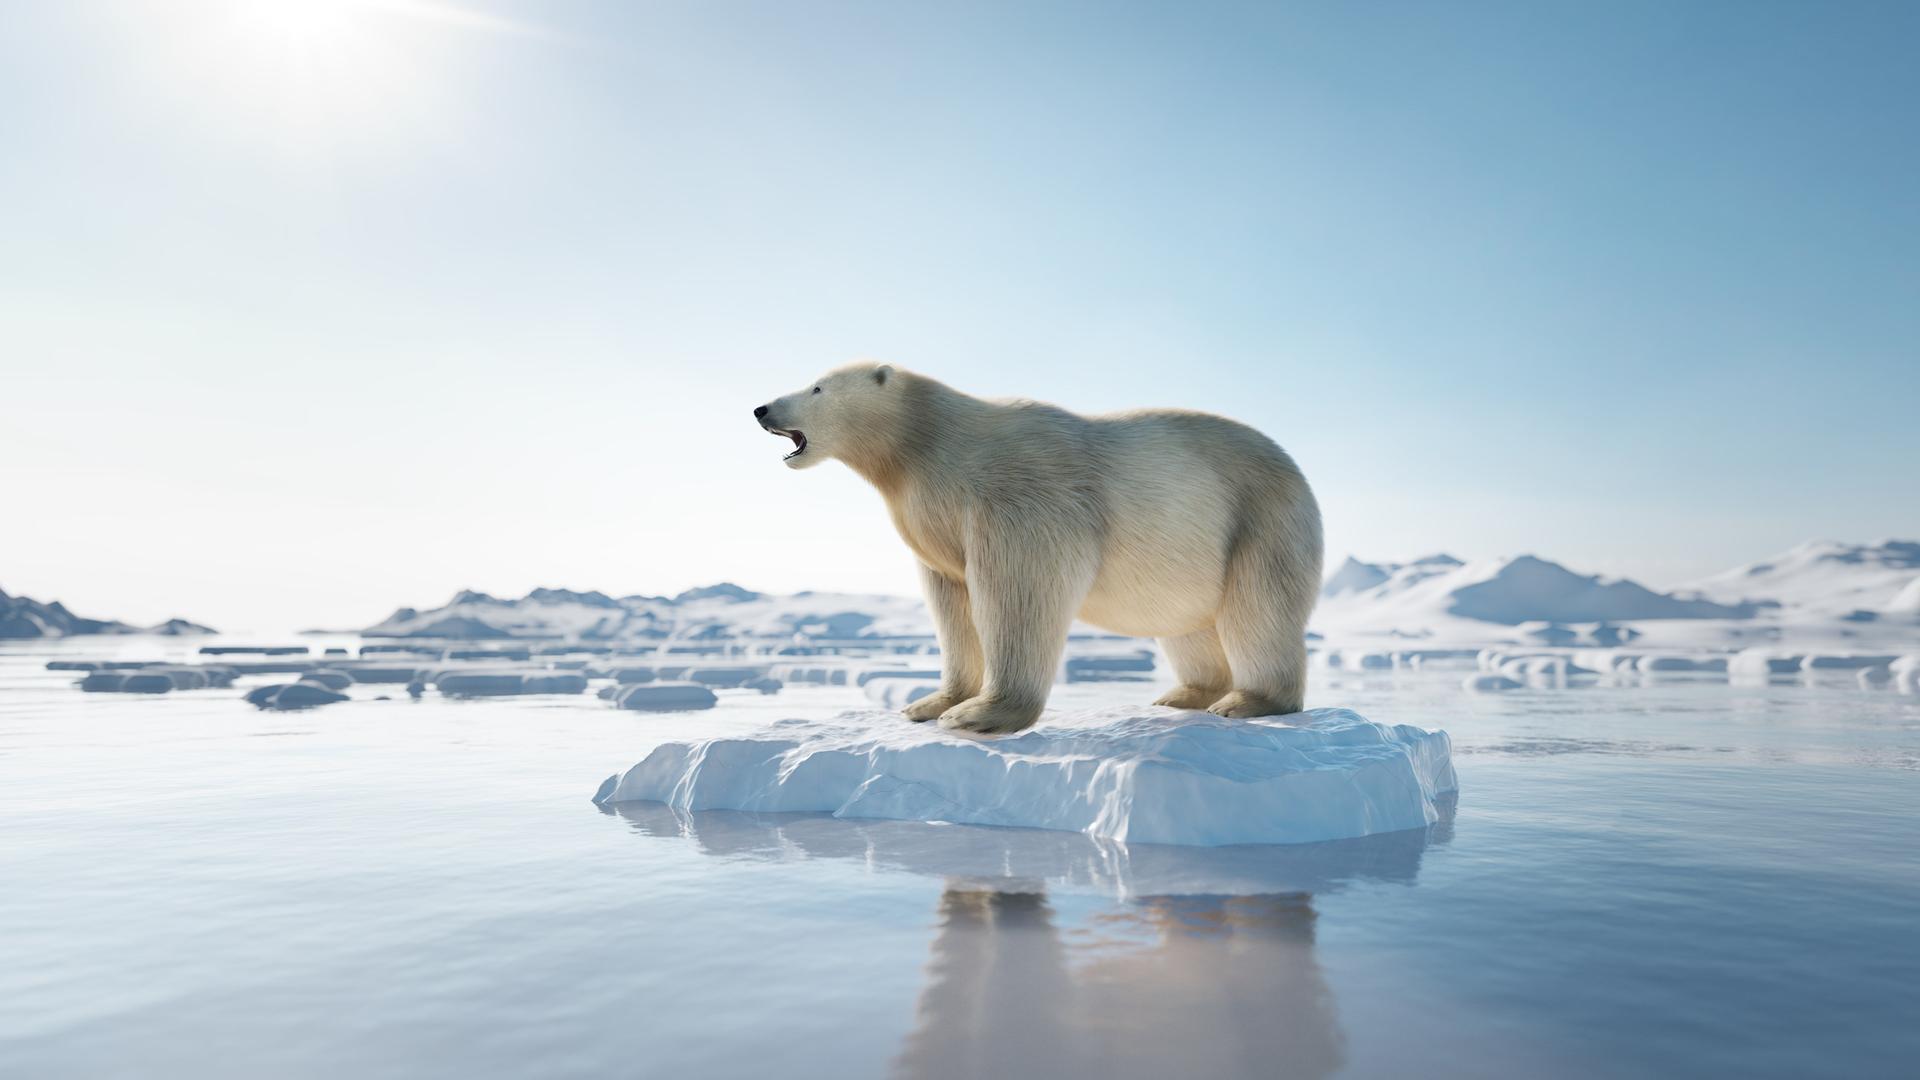 Ein Eisbär steht mit geöffnetem Maul auf einer kleinen Eisscholle auf der ansonsten wenig vereisten Wasseroberfläche. Es sieht aus, als würde er einen Laut ausstoßen.